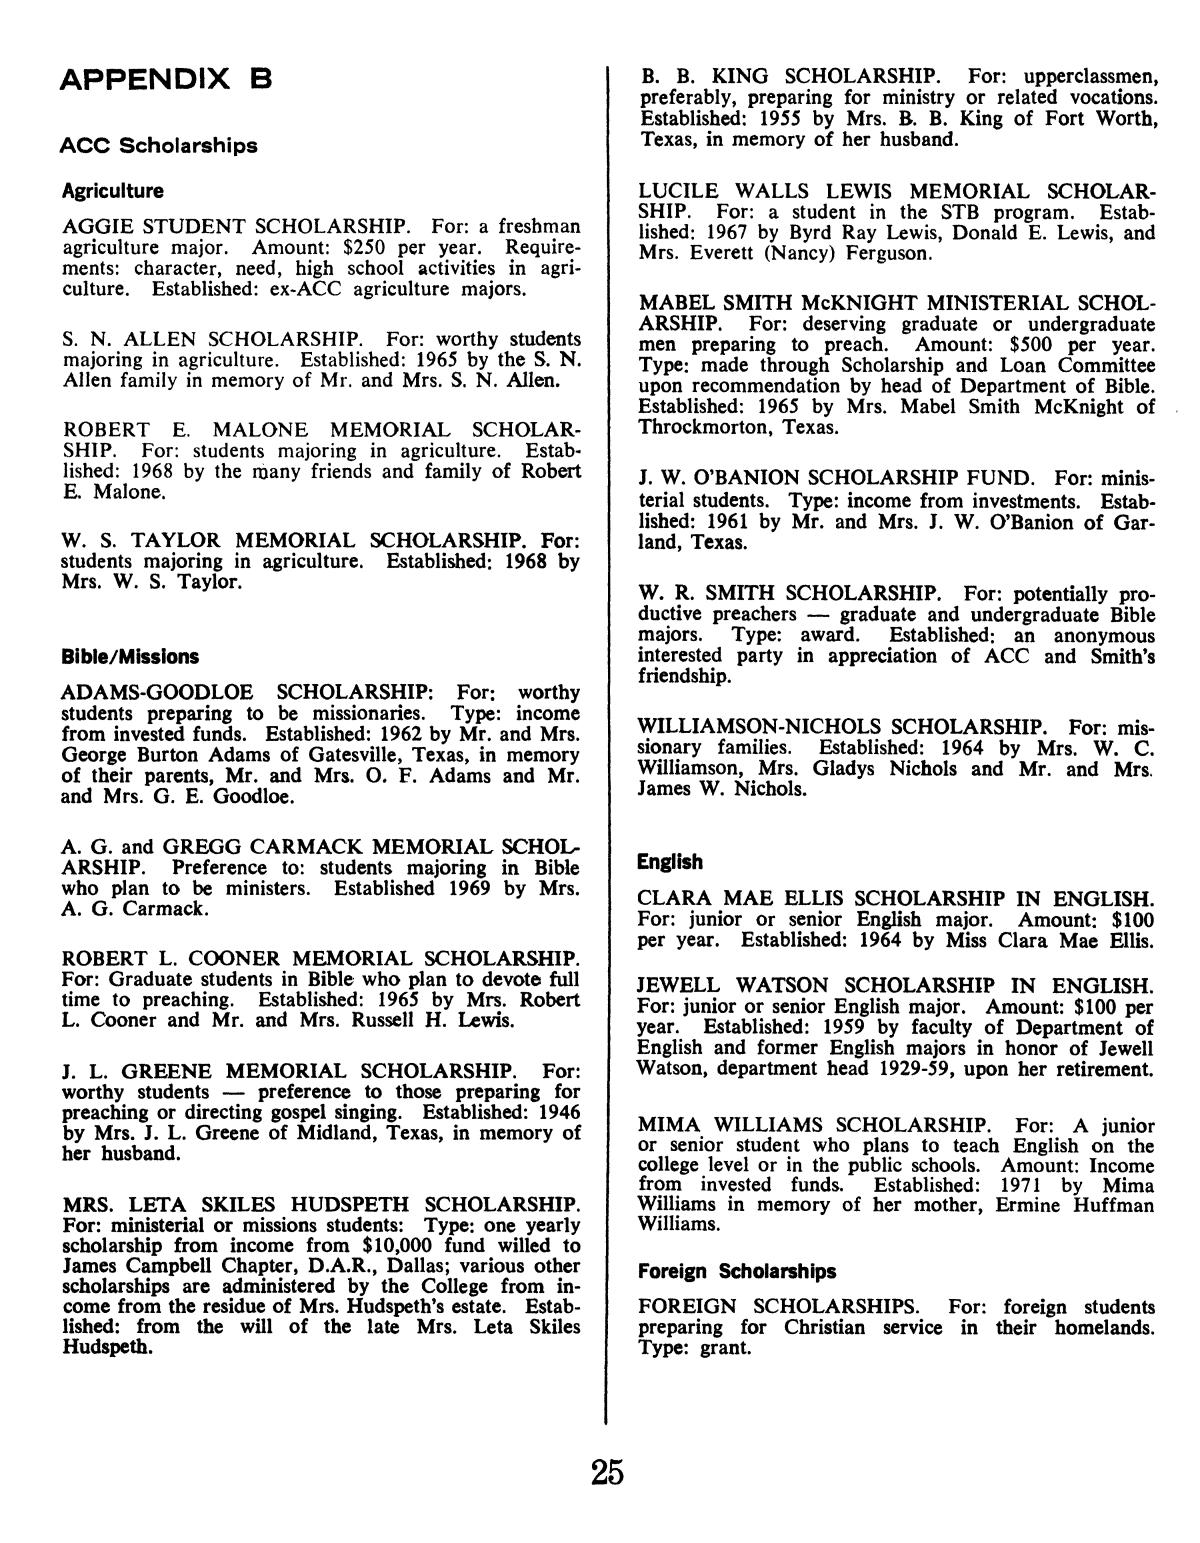 Catalog of Abilene Christian College, 1974-1975
                                                
                                                    25
                                                